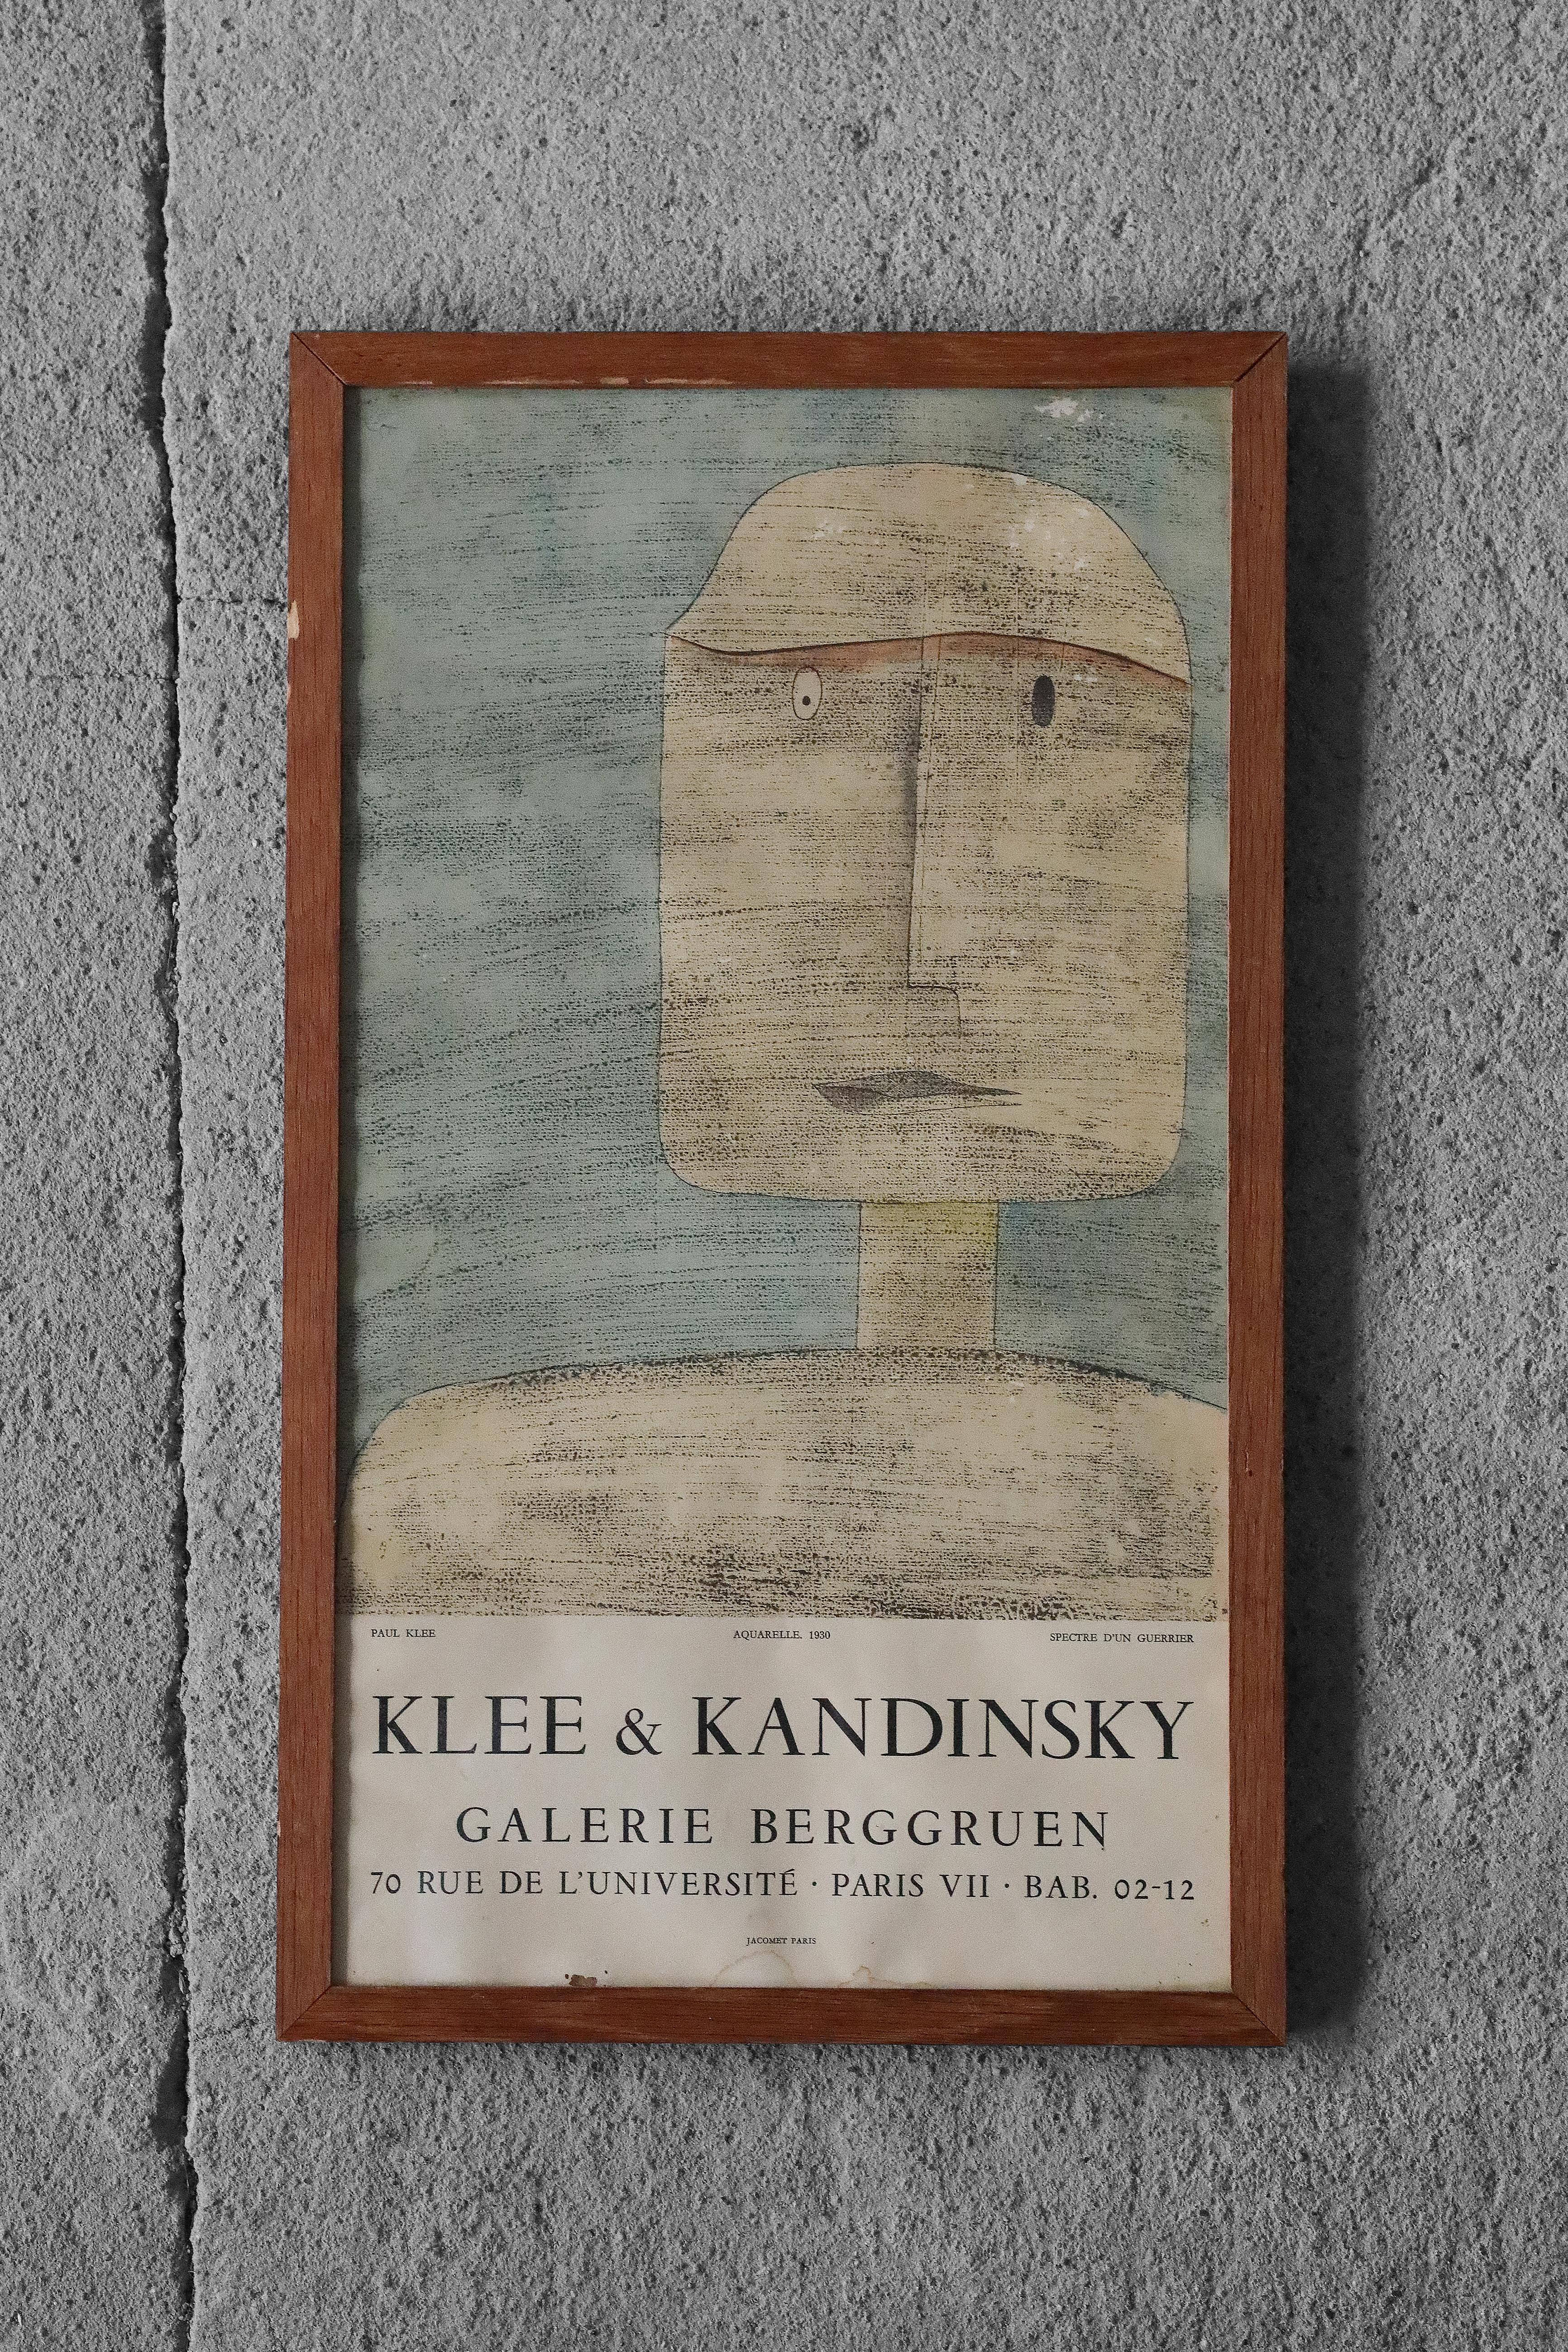 Affiche originale des années 1960 de la prestigieuse Galerie Berggruen à Paris, imprimée à l'occasion de l'exposition d'œuvres de Paul Klee et de Wassily Kandinsky. L'affiche présente l'aquarelle Spectre d'un Guerrier de Paul Klee datant de 1930.